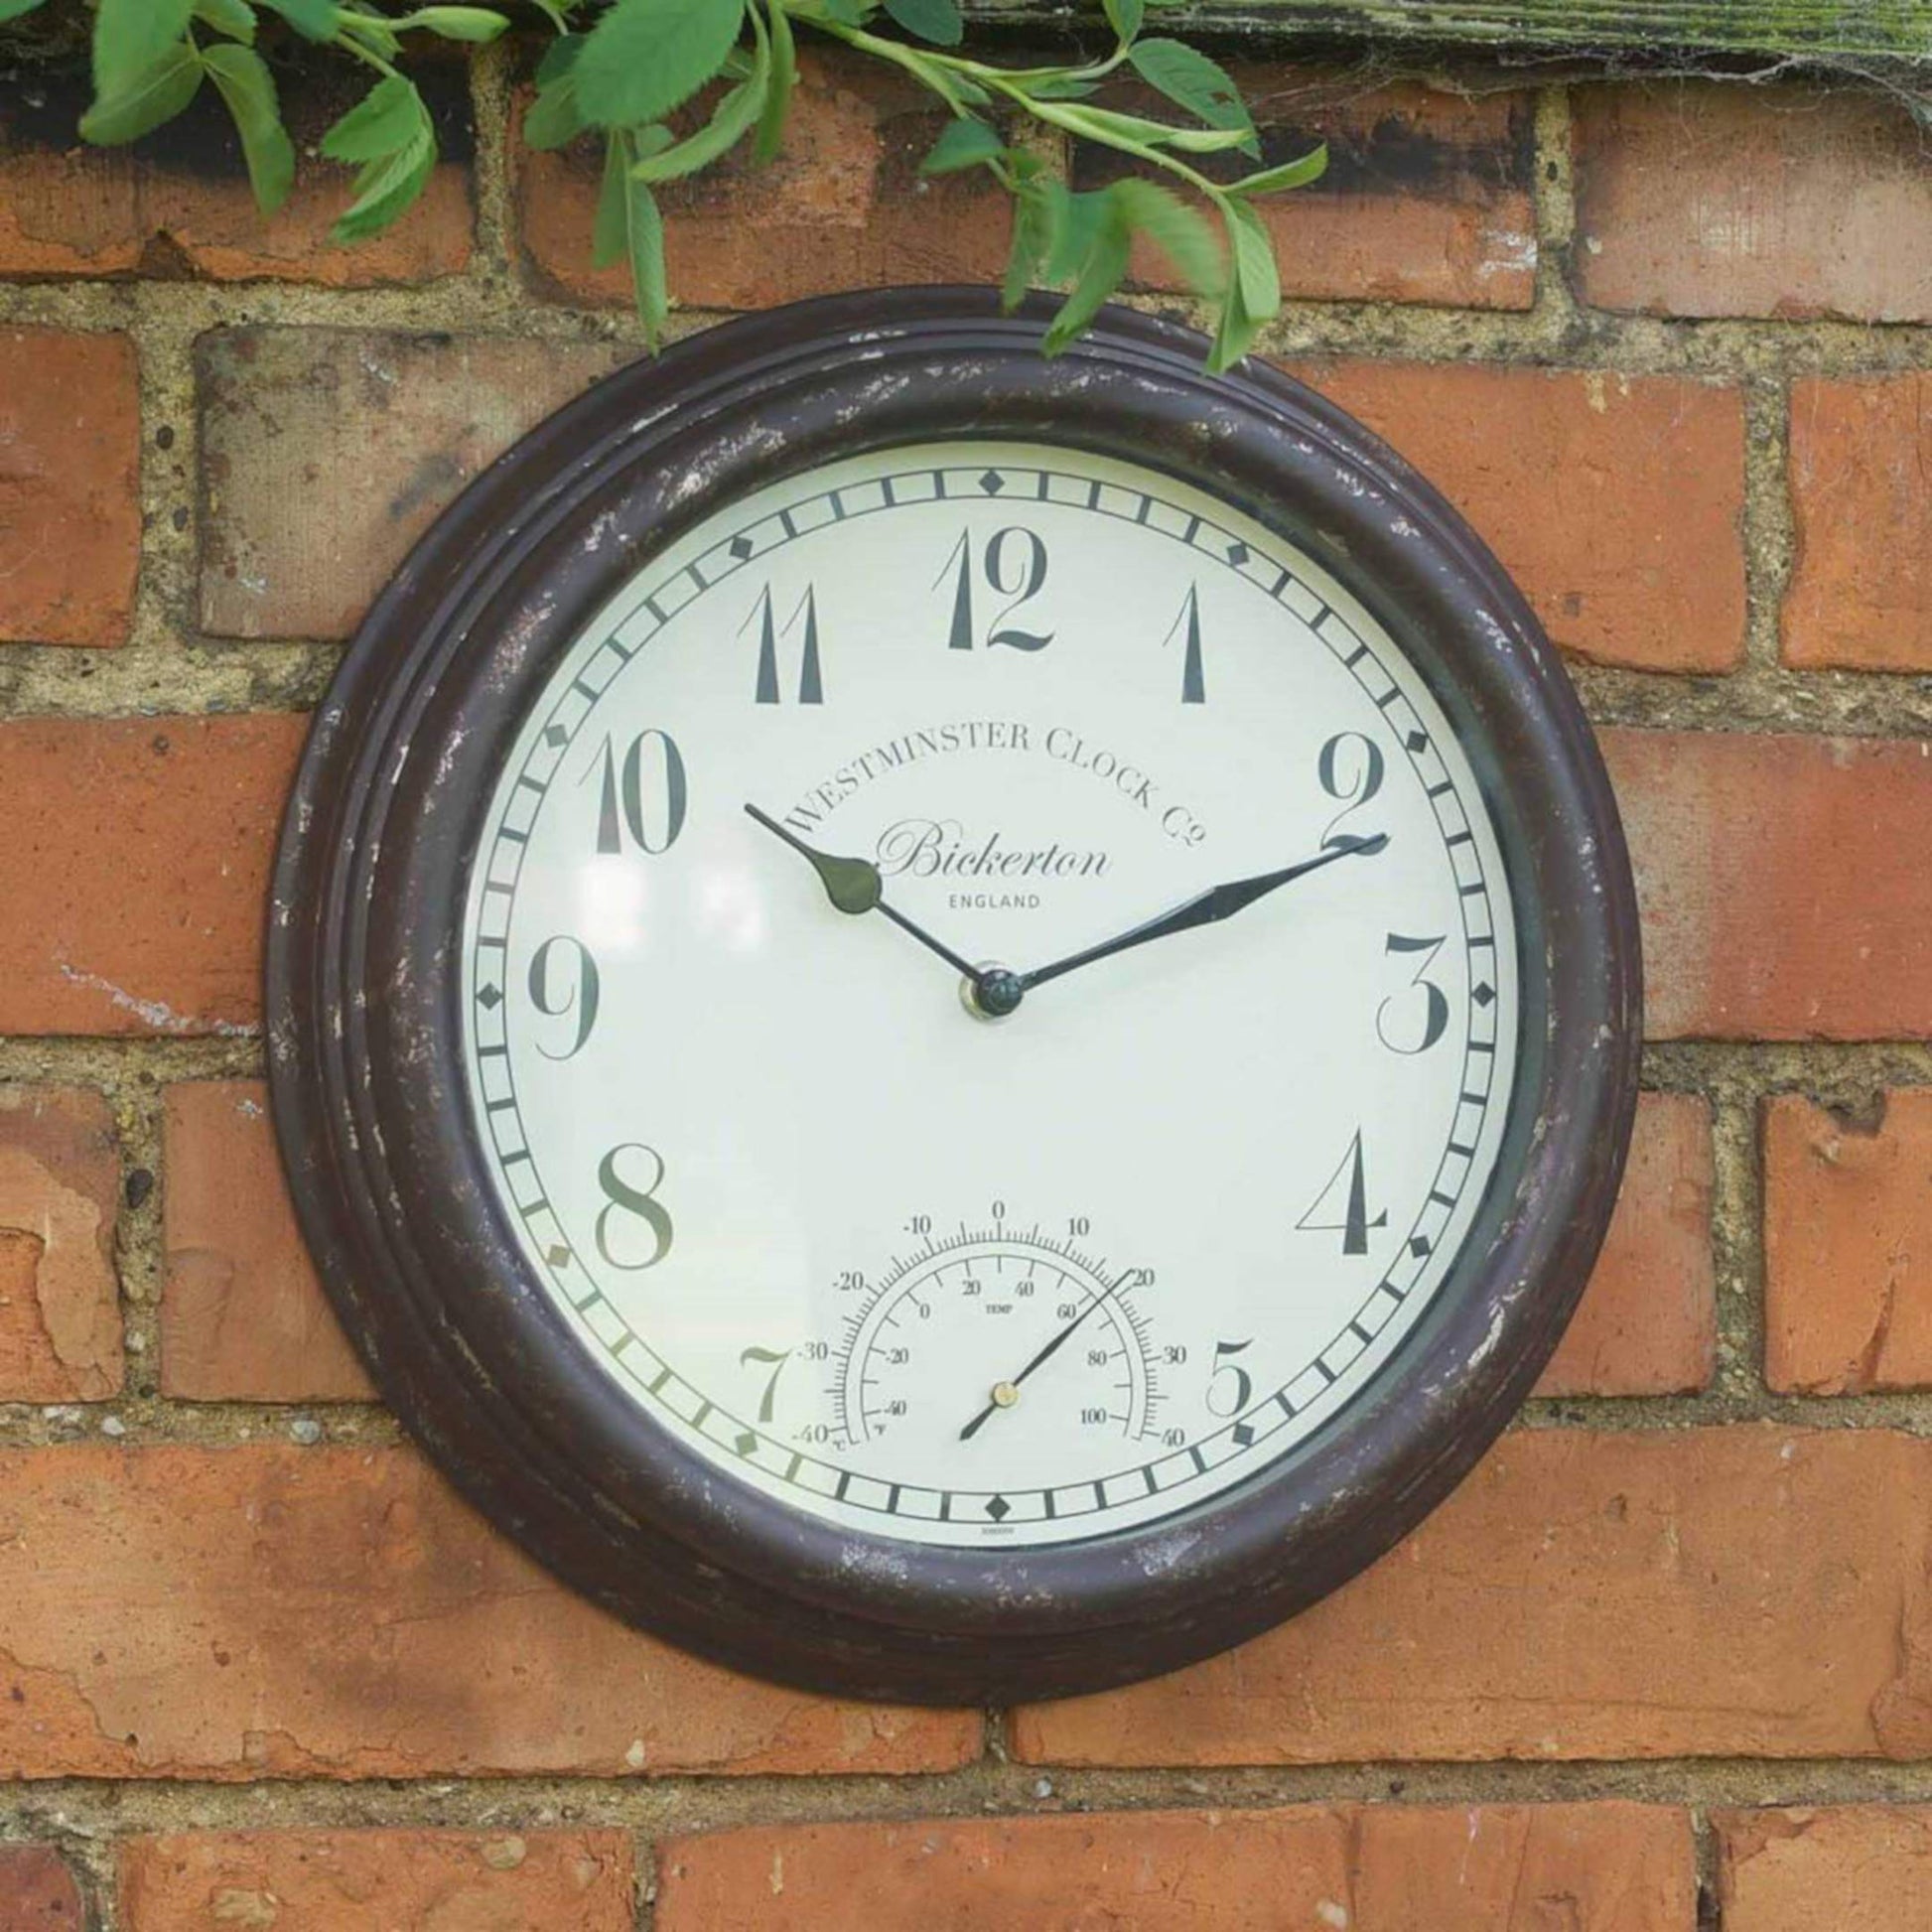 Štýlové nástenné hodiny Bickerton s arabskými číslicami a s teplomerom priemeru 30cm vhodné aj do exteriéru od OUTSIDE-IN designs